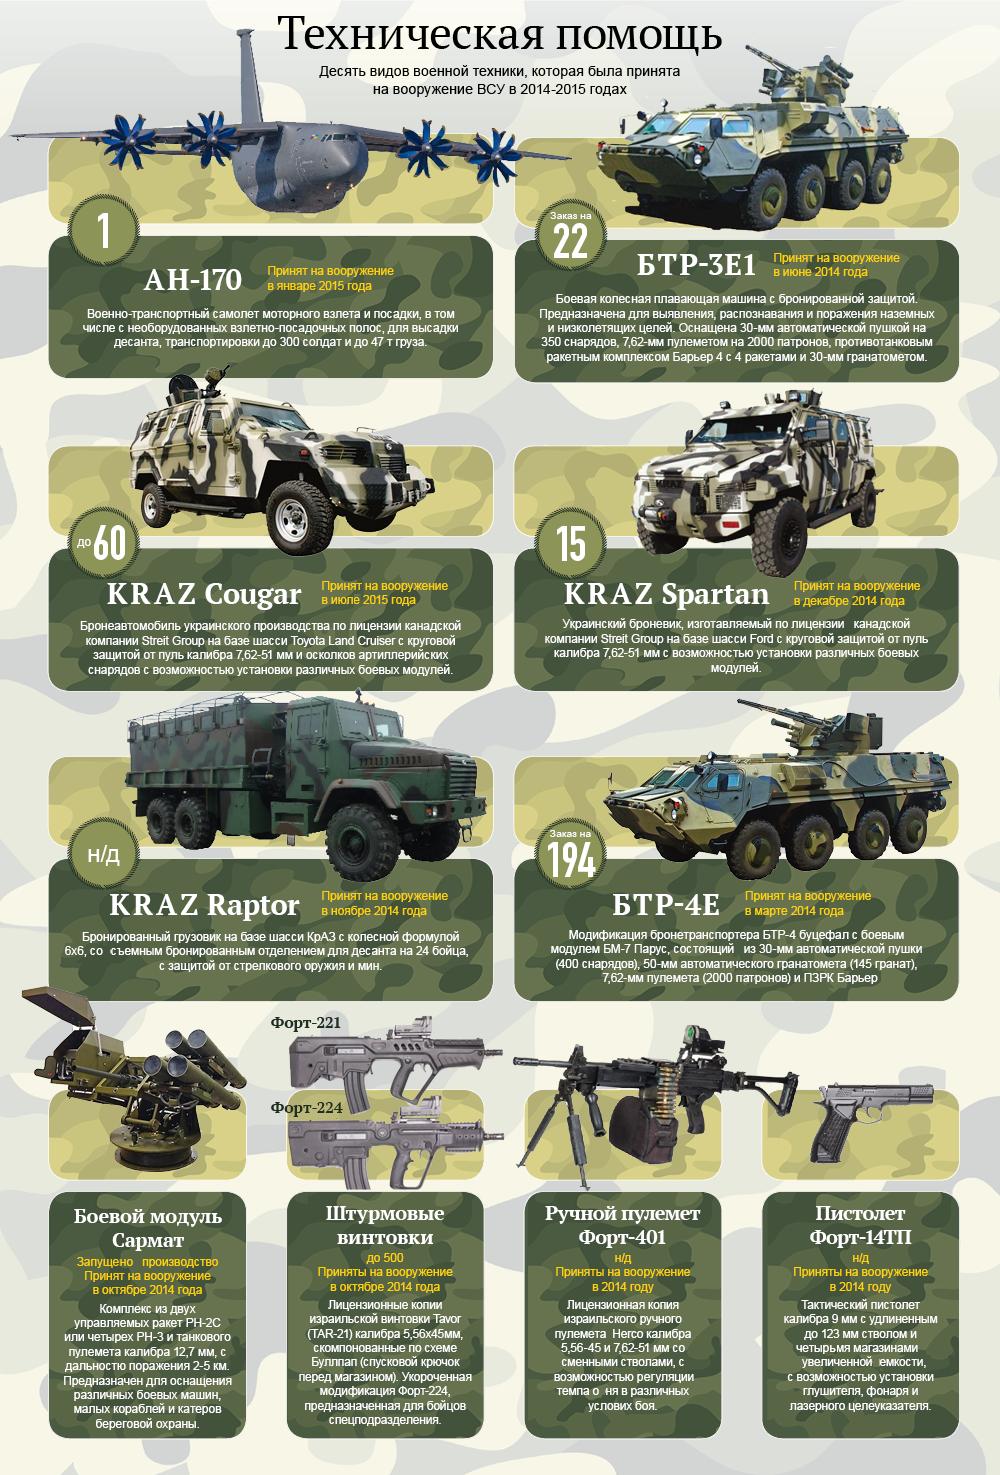 Десять видов военной техники, принятой на вооружение ВСУ в 2014-2015 гг. Инфографика